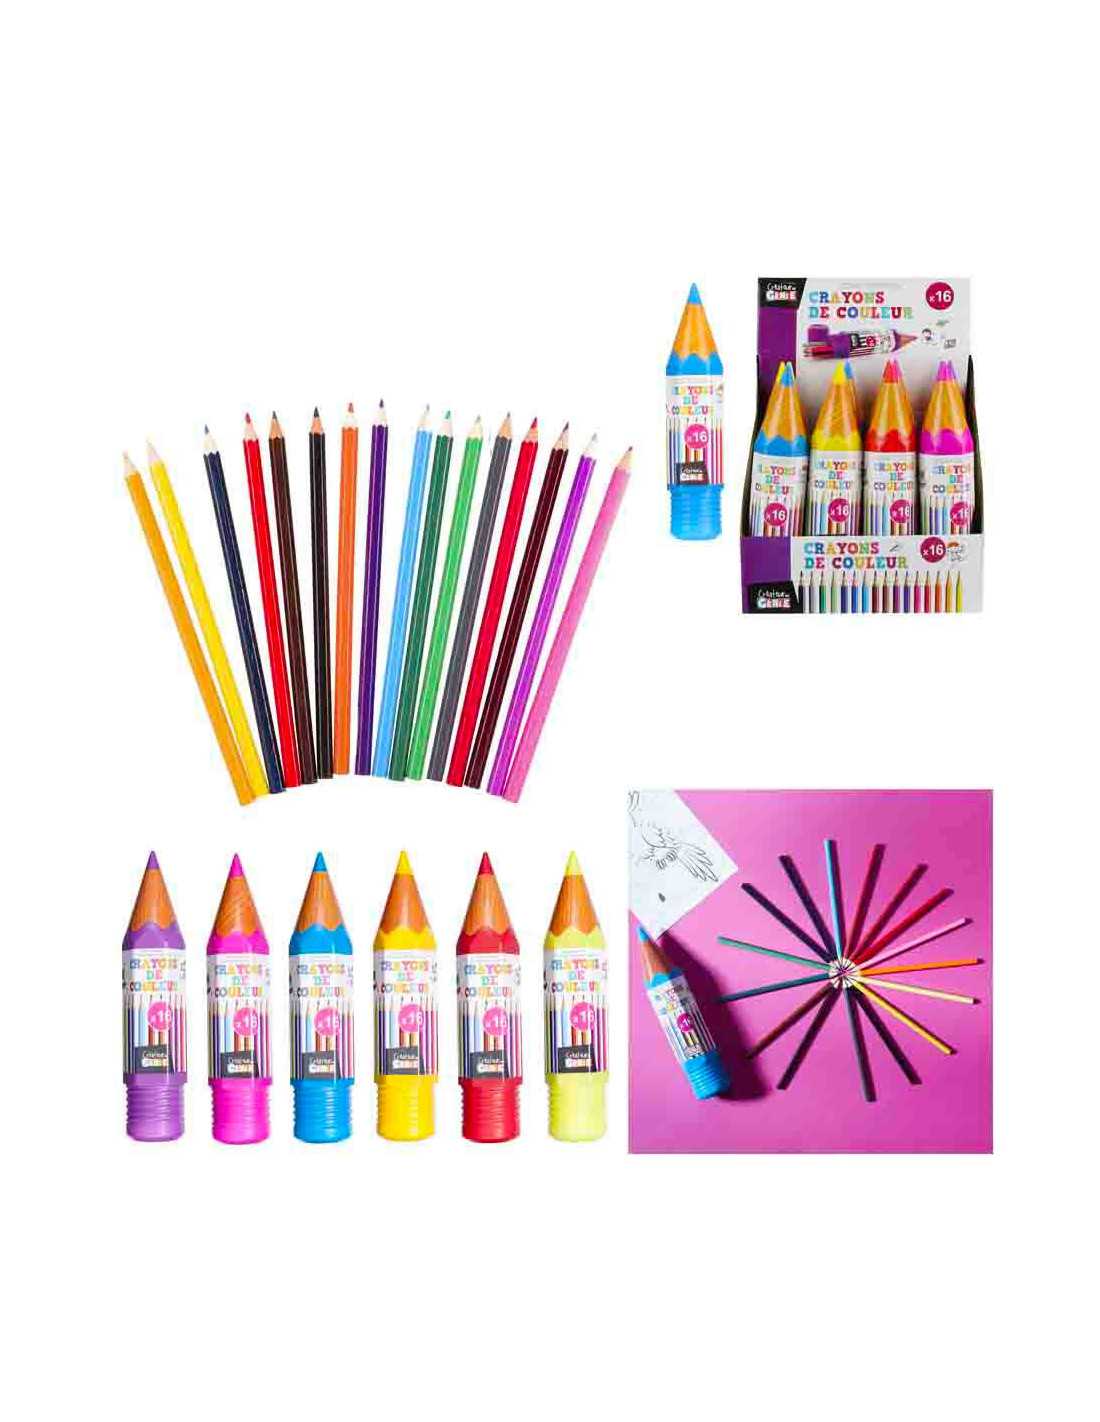 Craie de couleur pour tableau - Crayola